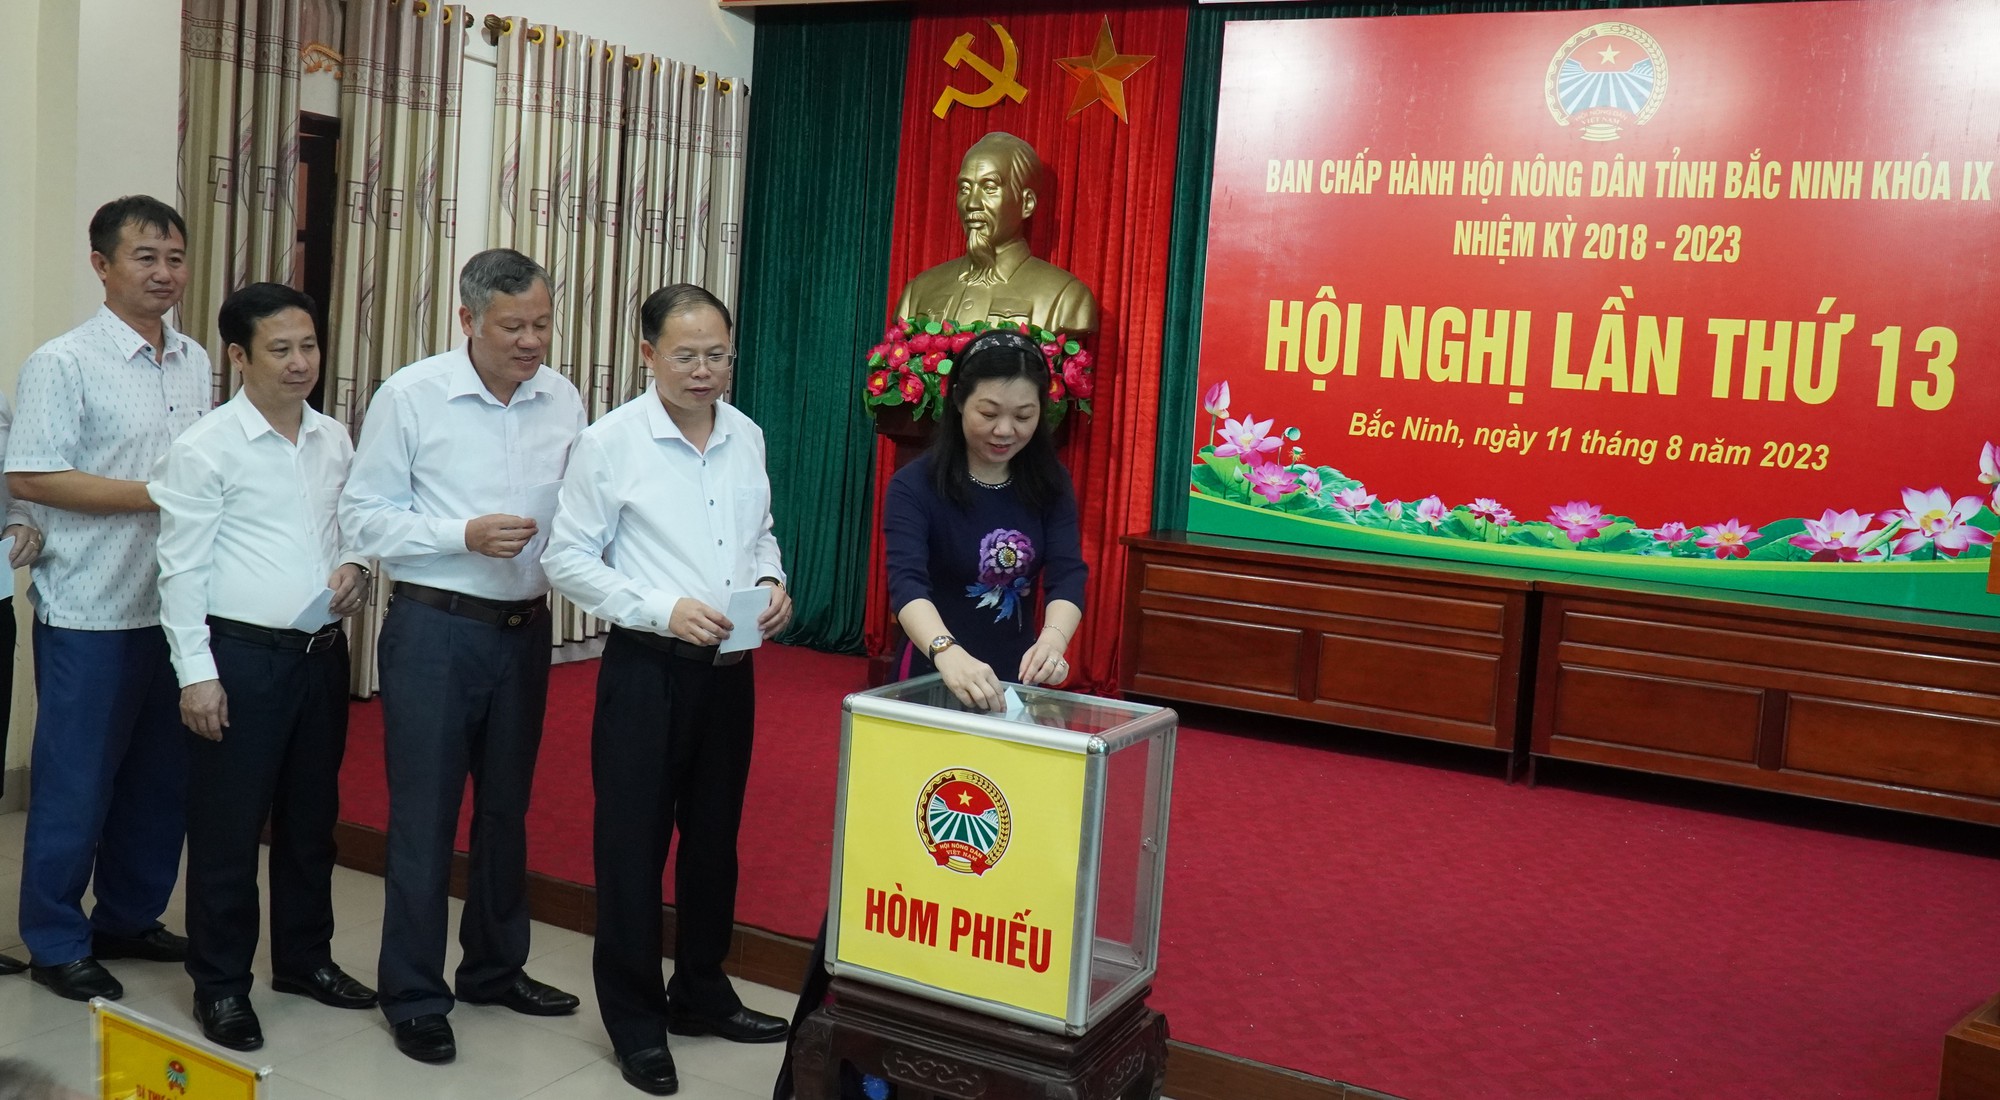 Chân dung nữ Chủ tịch Hội Nông dân tỉnh Bắc Ninh Nguyễn Thị Lệ Tuyết - Ảnh 3.